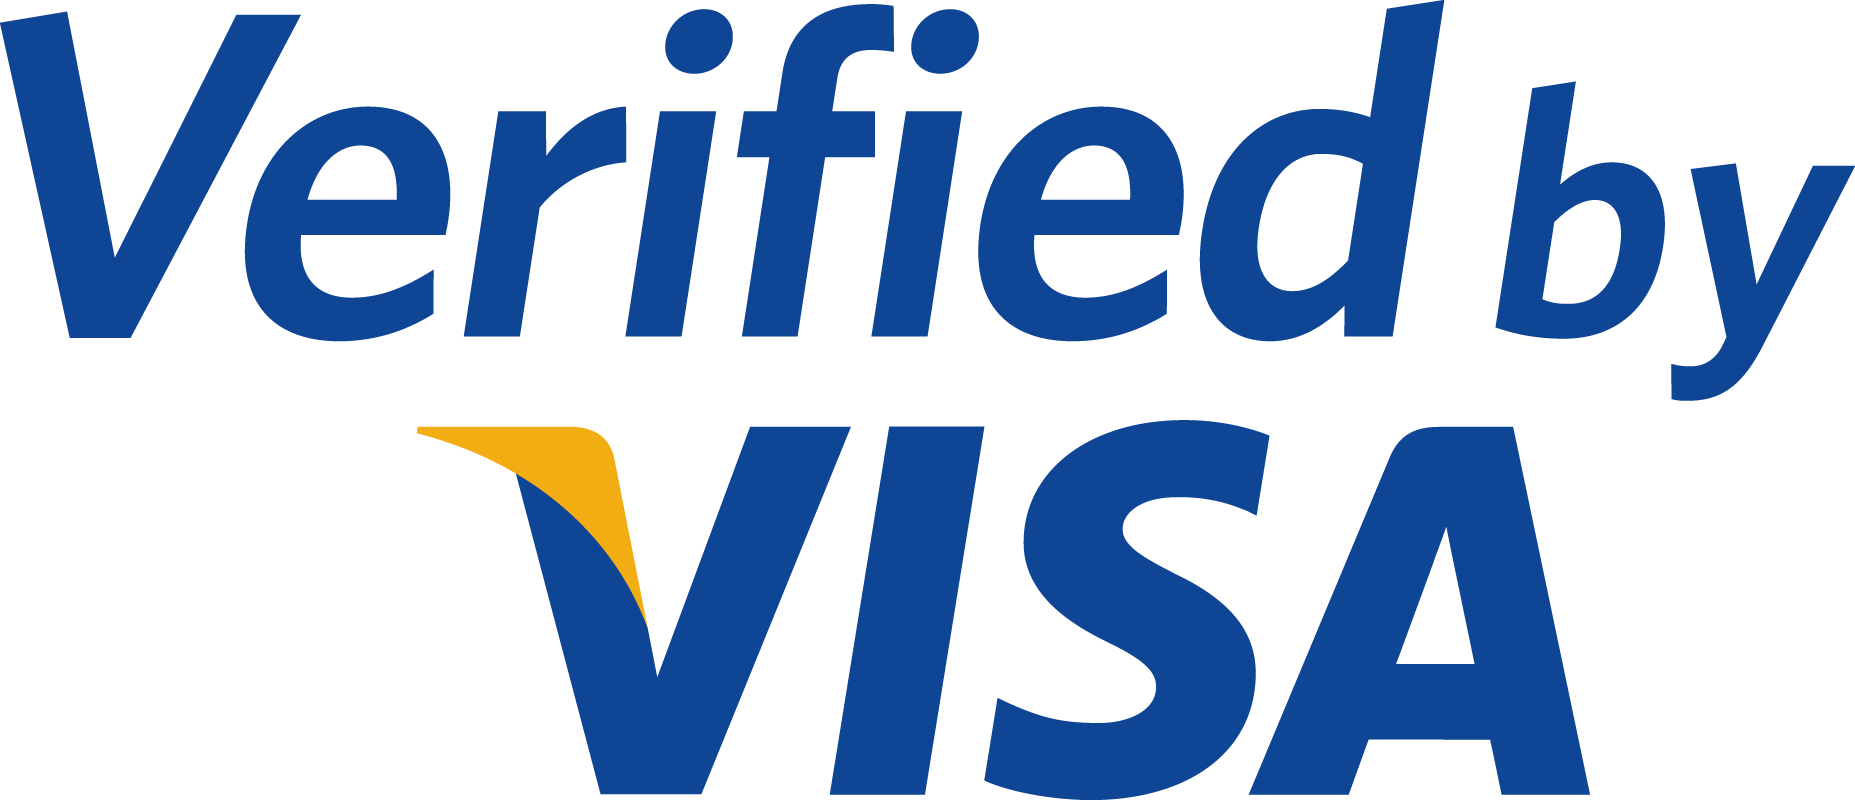 MasterCard Visa PNG Transparant Beeld